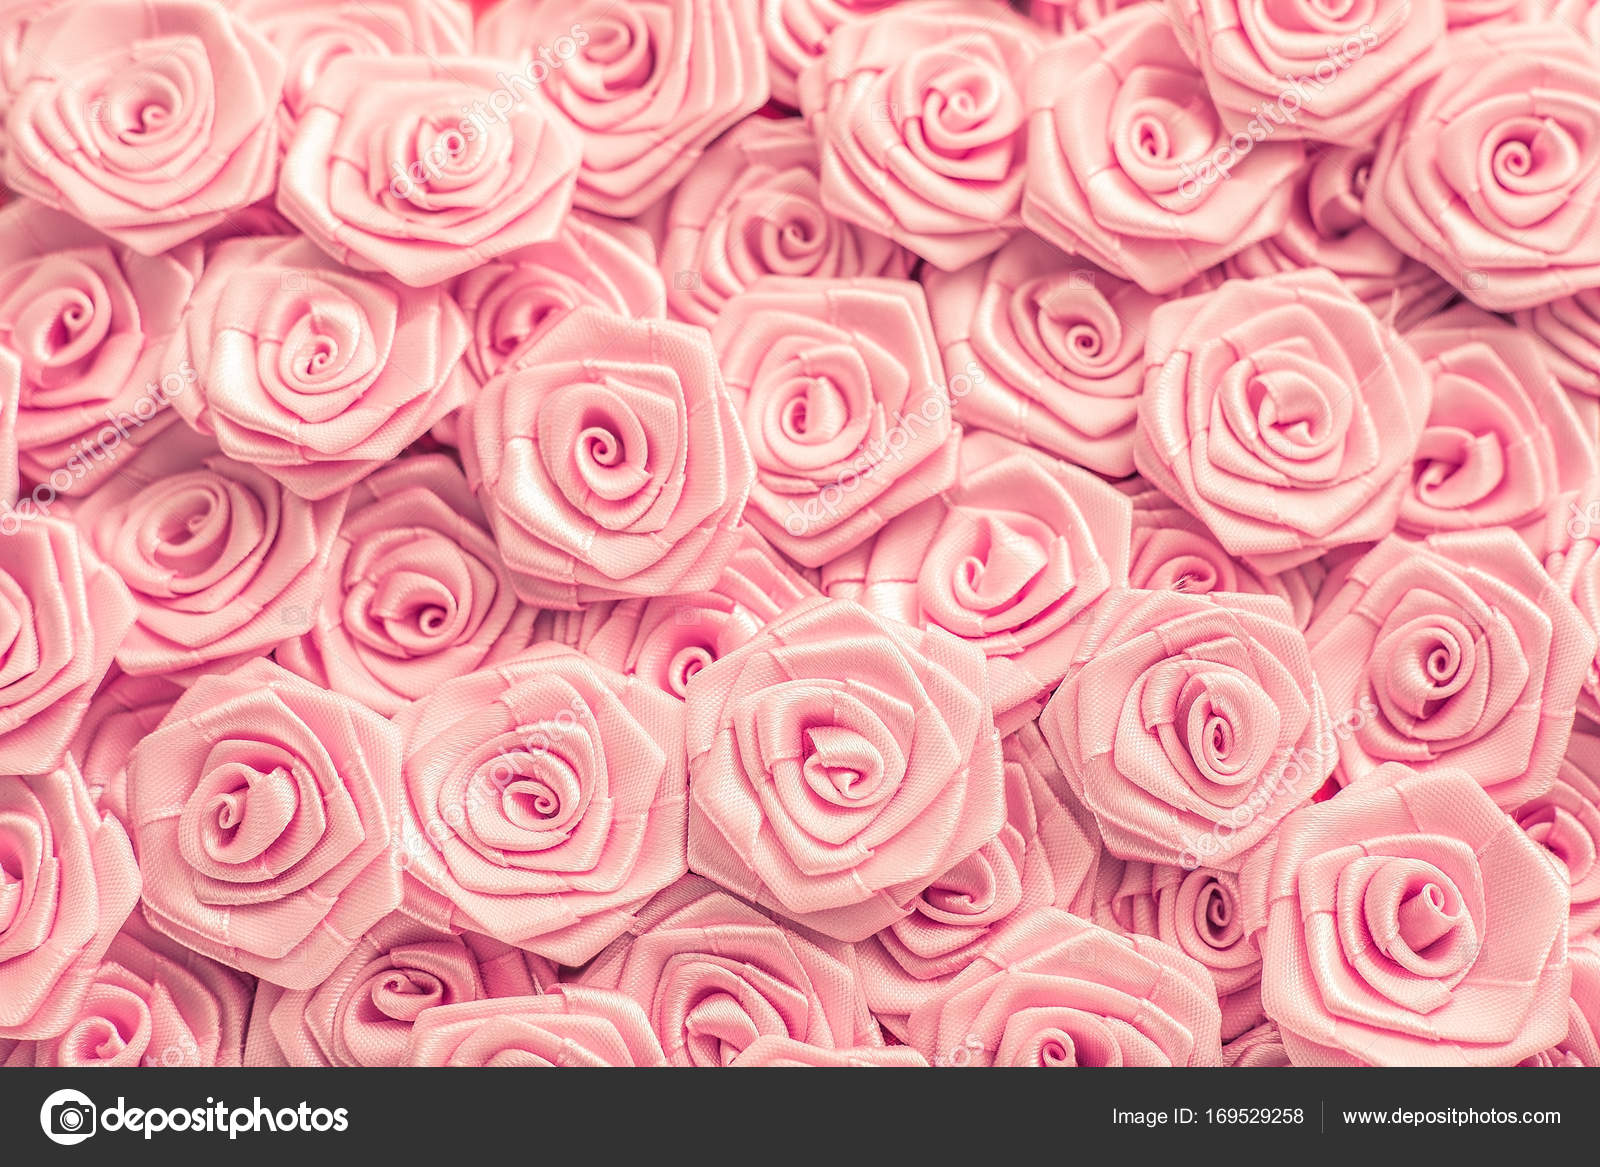 Với những đường nét mộc mạc của họa tiết hoa hồng, bạn sẽ cảm thấy phấn khích và vui sướng đến kỳ lạ. Những bông hoa tươi sáng, ấm áp sẽ cho bạn cảm giác như đang nằm trong một vườn hoa thật sự.